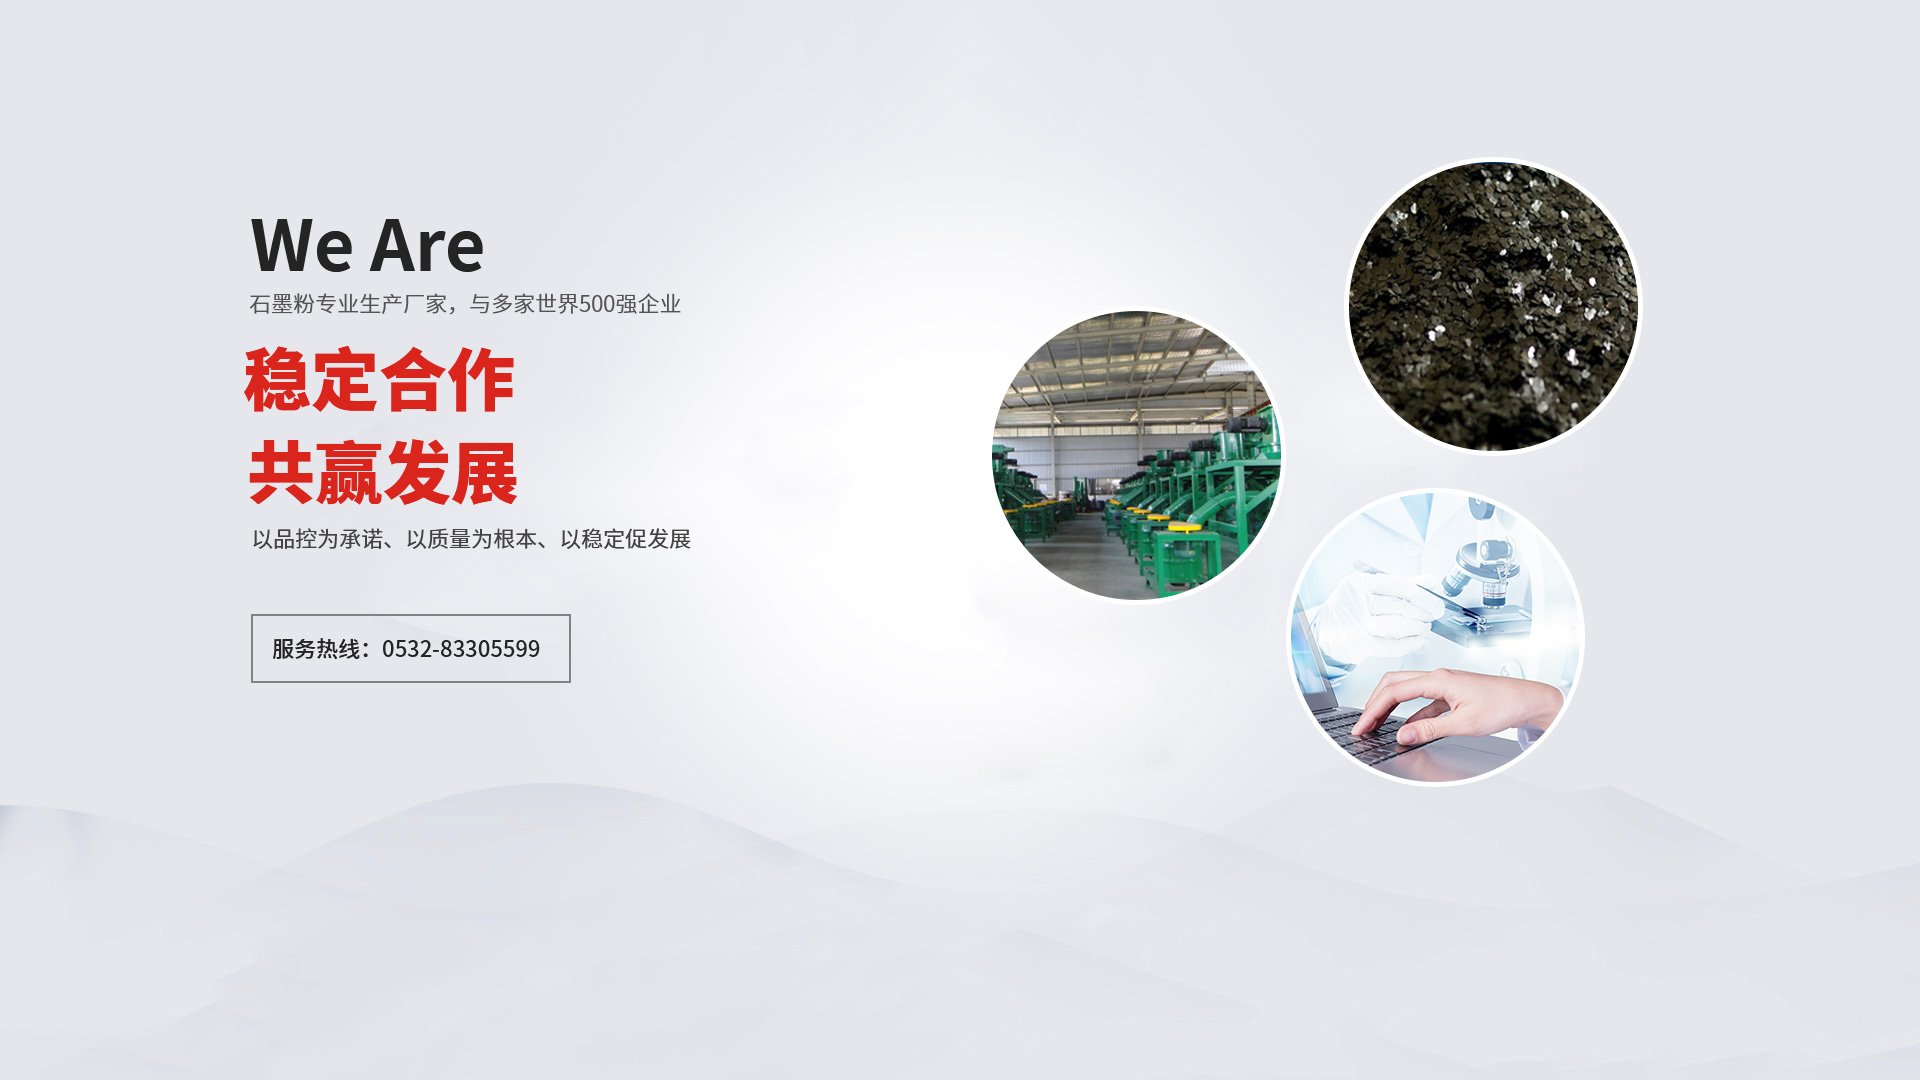 青島舉昶塑膠專業提供塑料加工,塑料模具等產品服務.